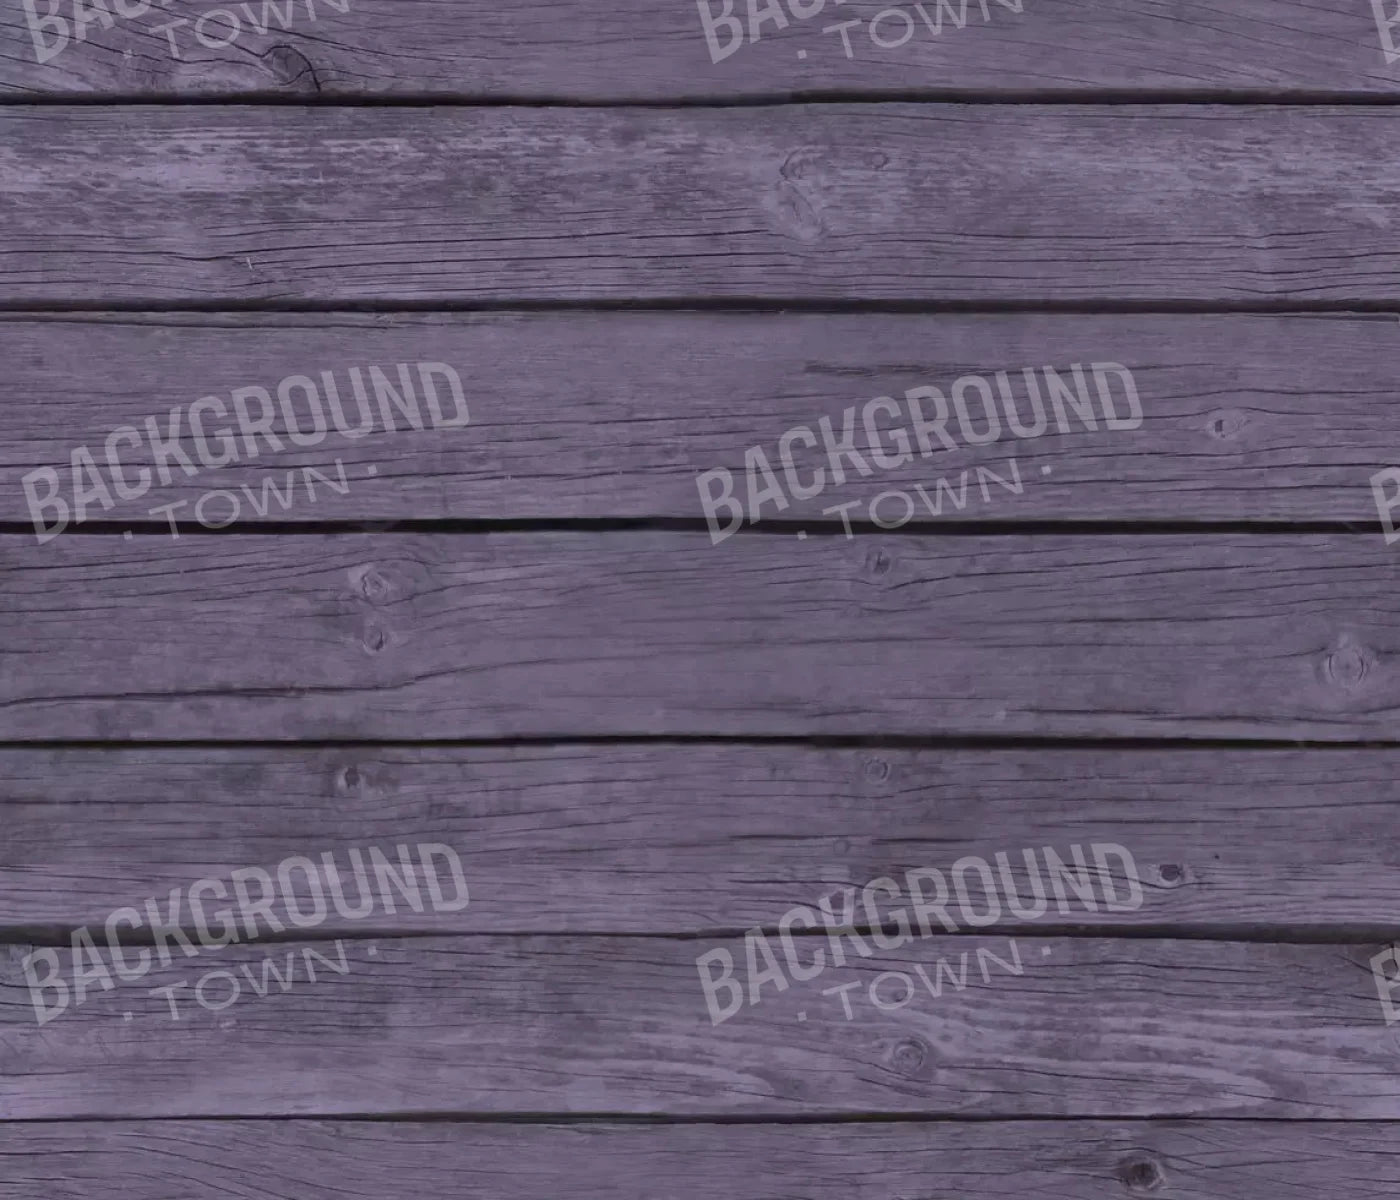 Boardwalk Purple 12X10 Ultracloth ( 144 X 120 Inch ) Backdrop